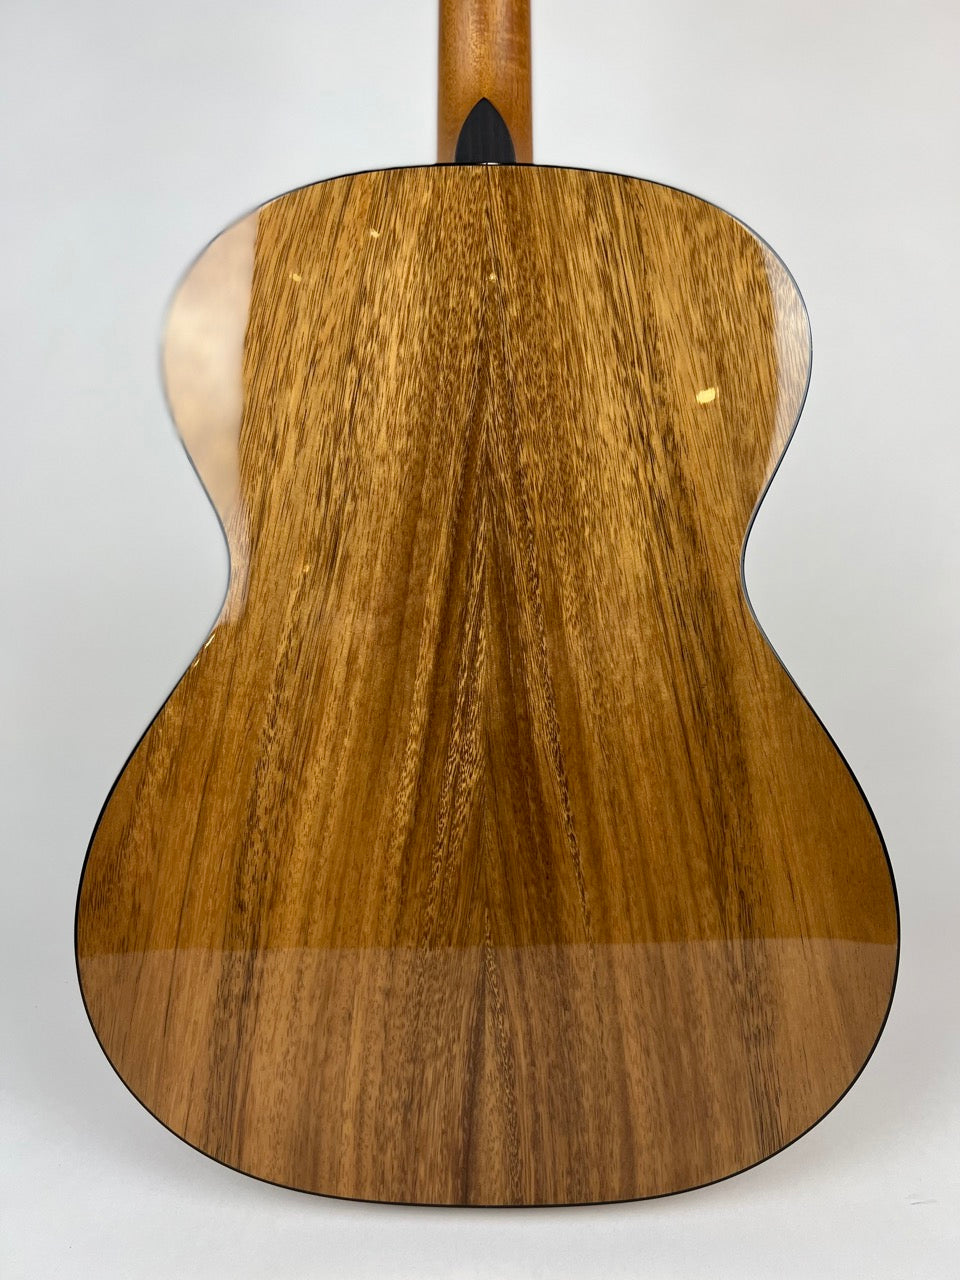 2019 Pono BN4-1 Tenor Guitar (Cedar/Acacia)